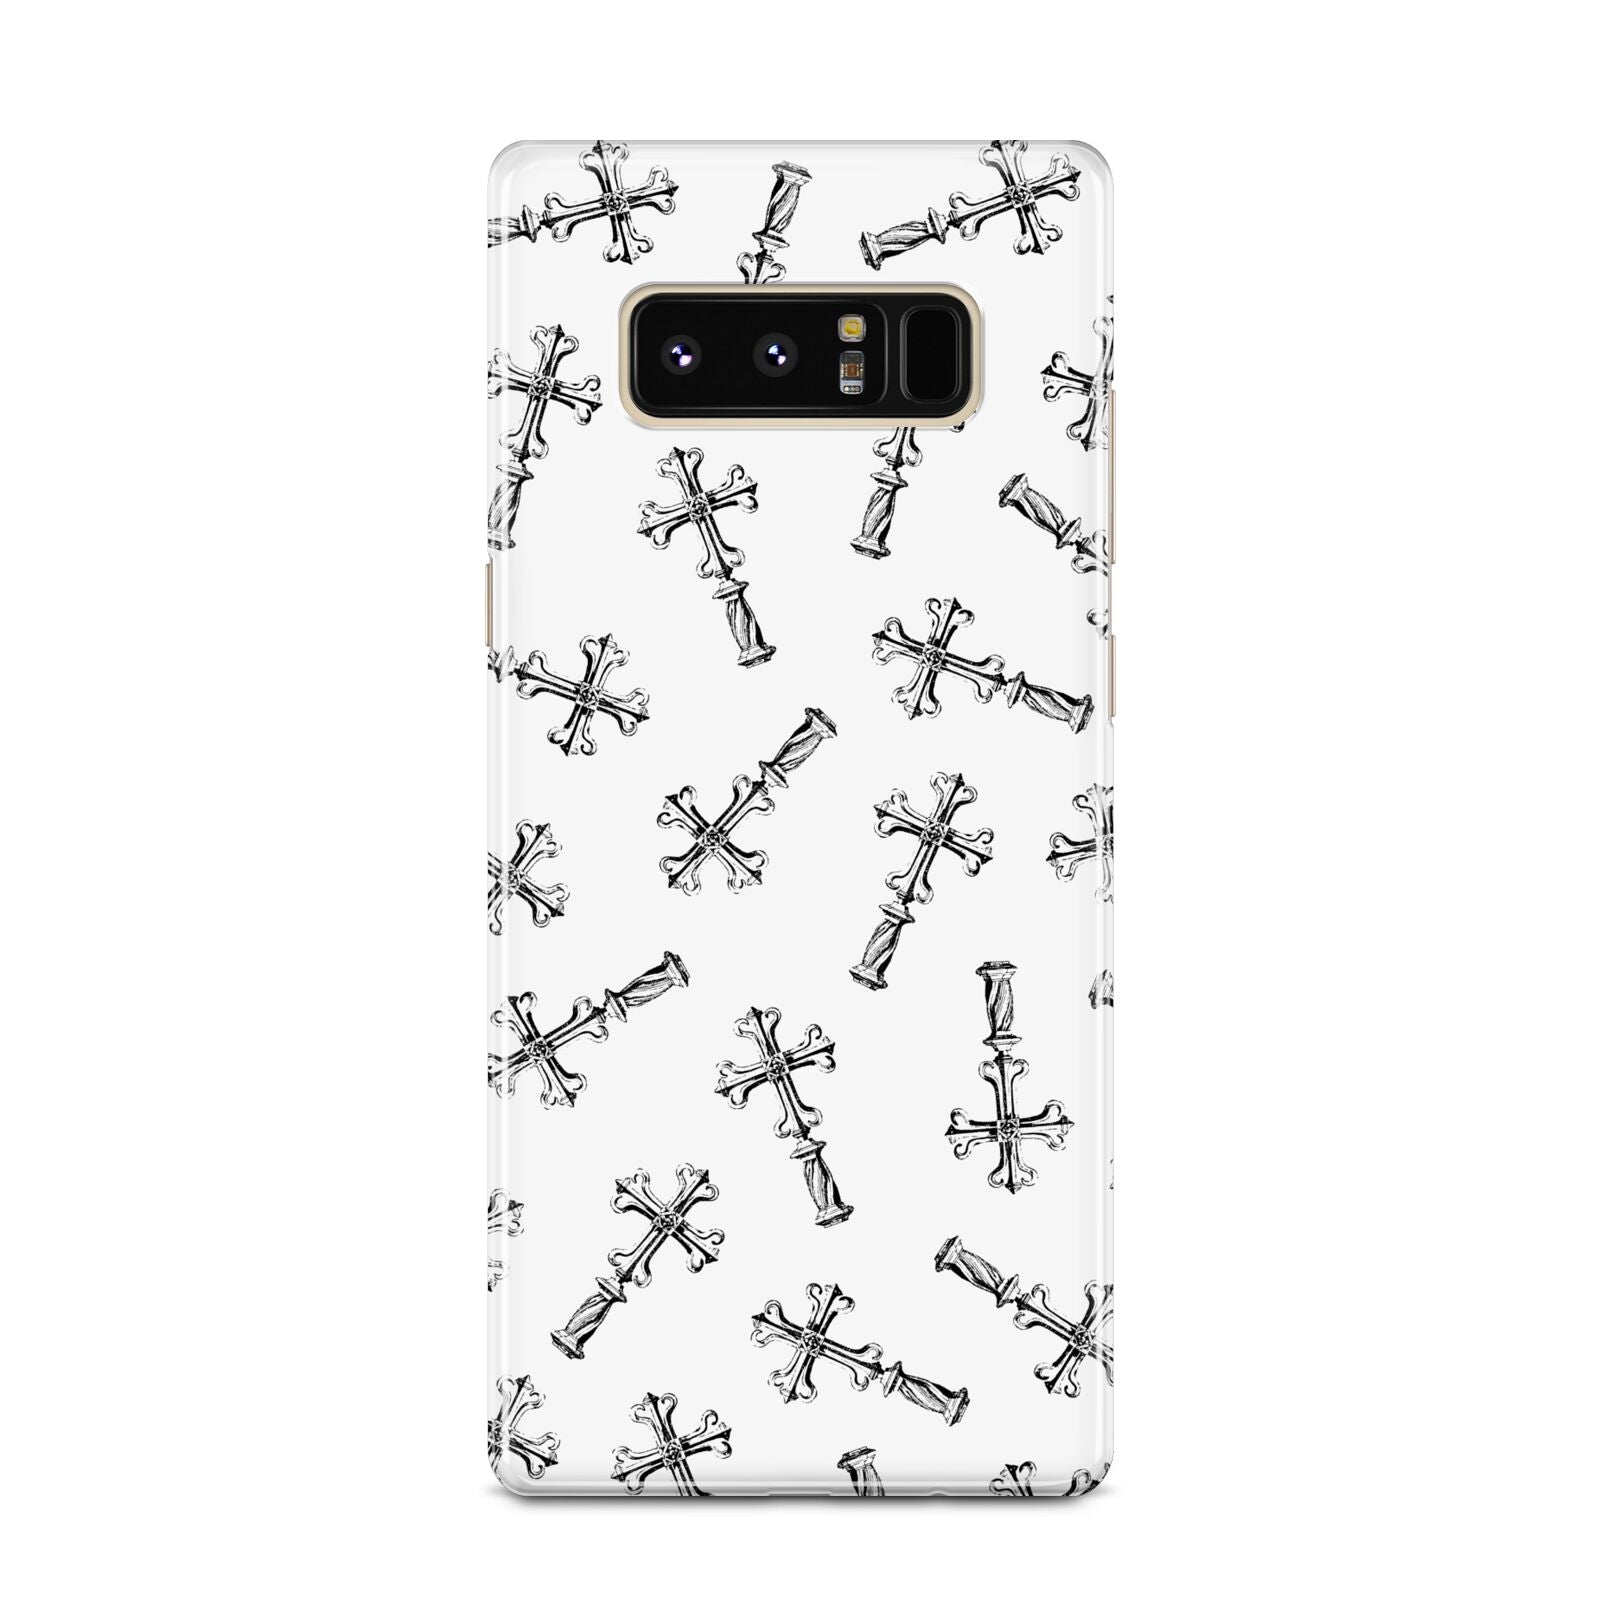 Monochrome Crosses Samsung Galaxy Note 8 Case